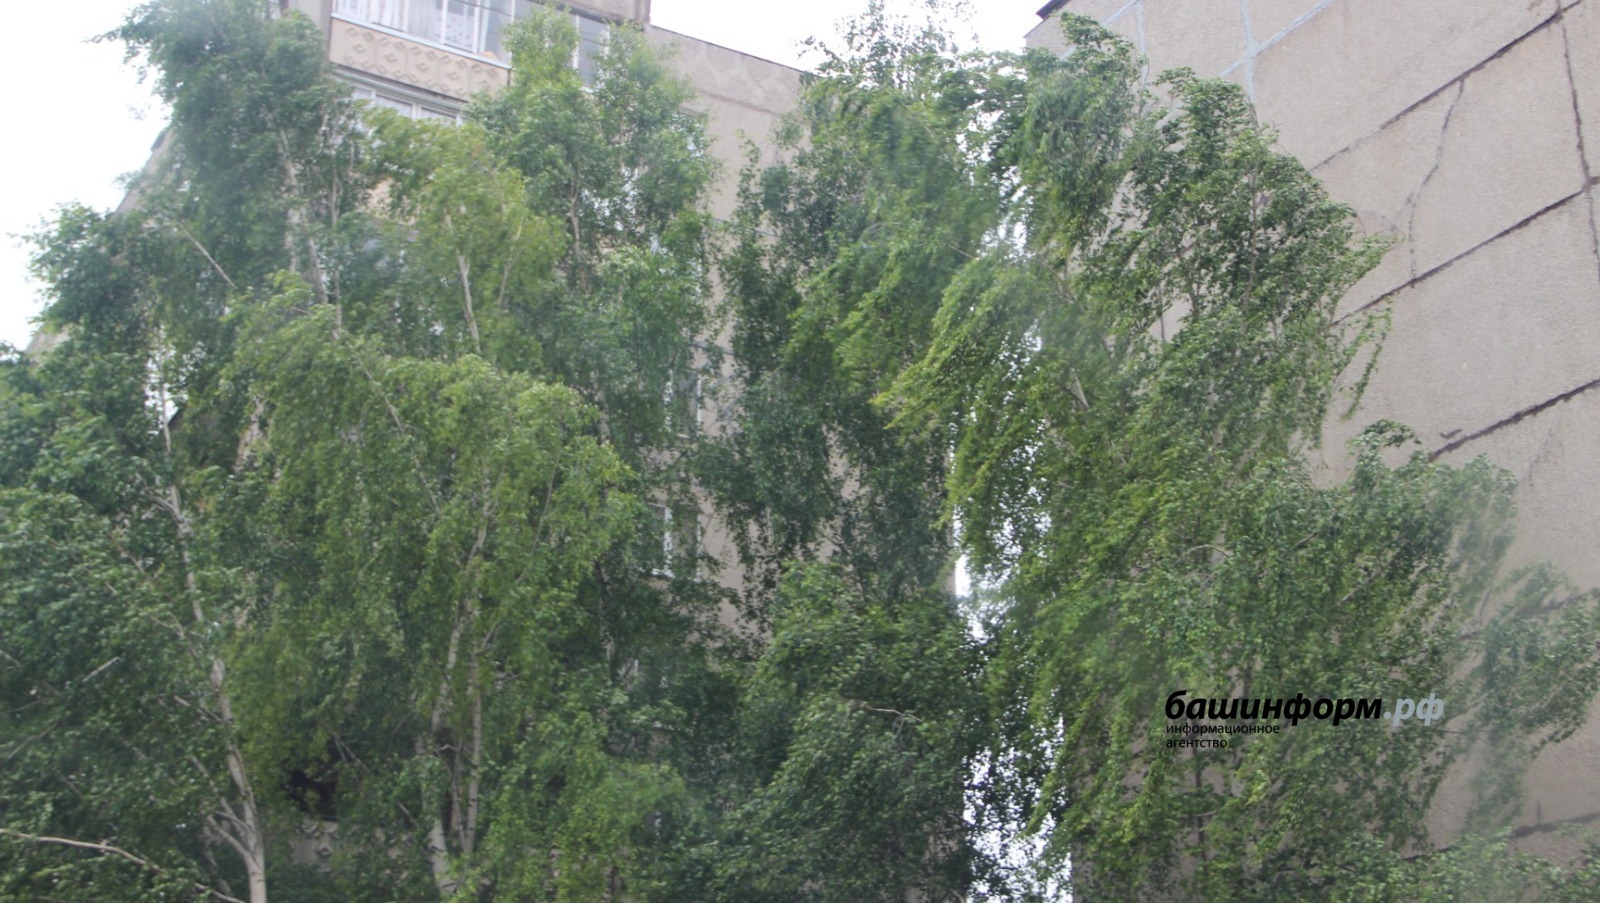 МЧС по Башкирии объявило штормовое предупреждение